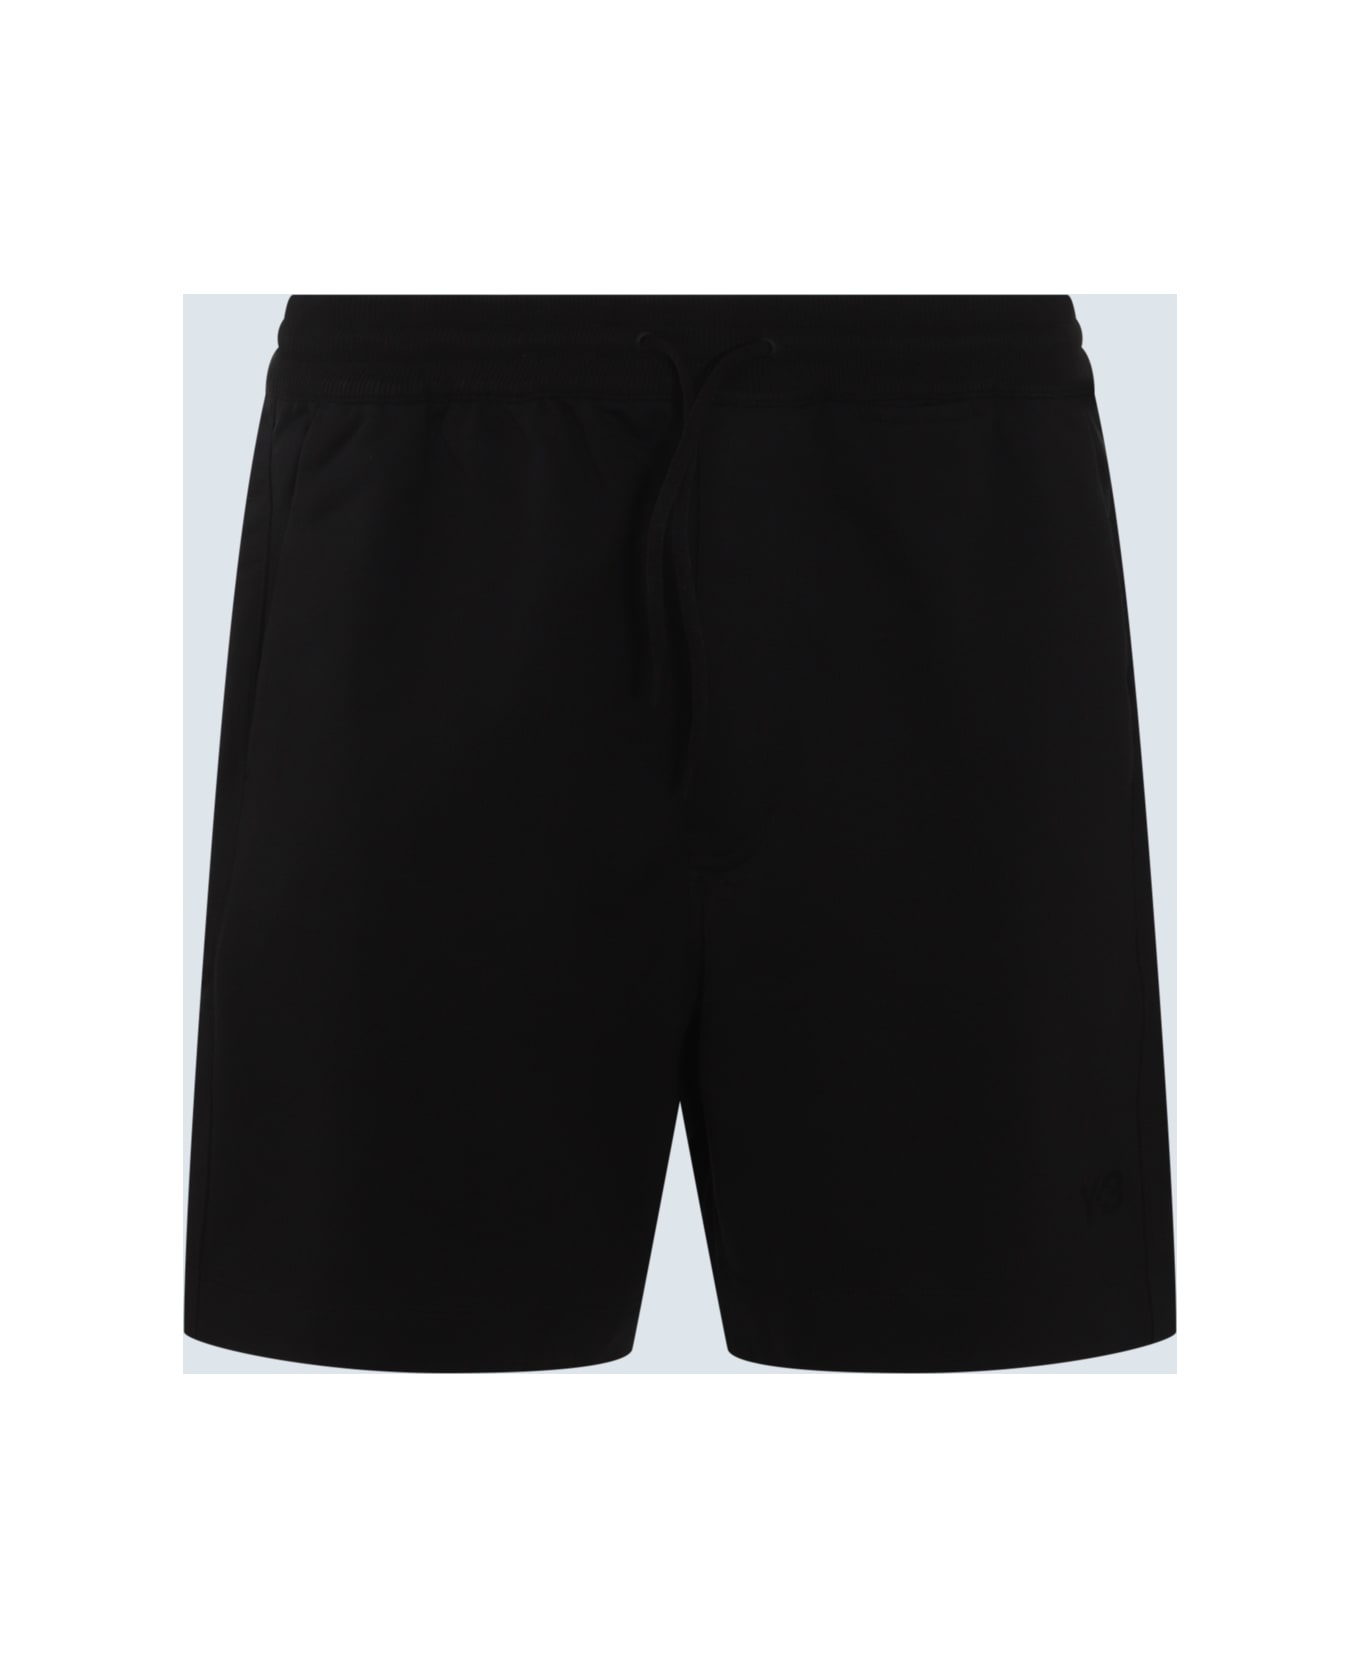 Y-3 Black Cotton Blend Shorts - Black